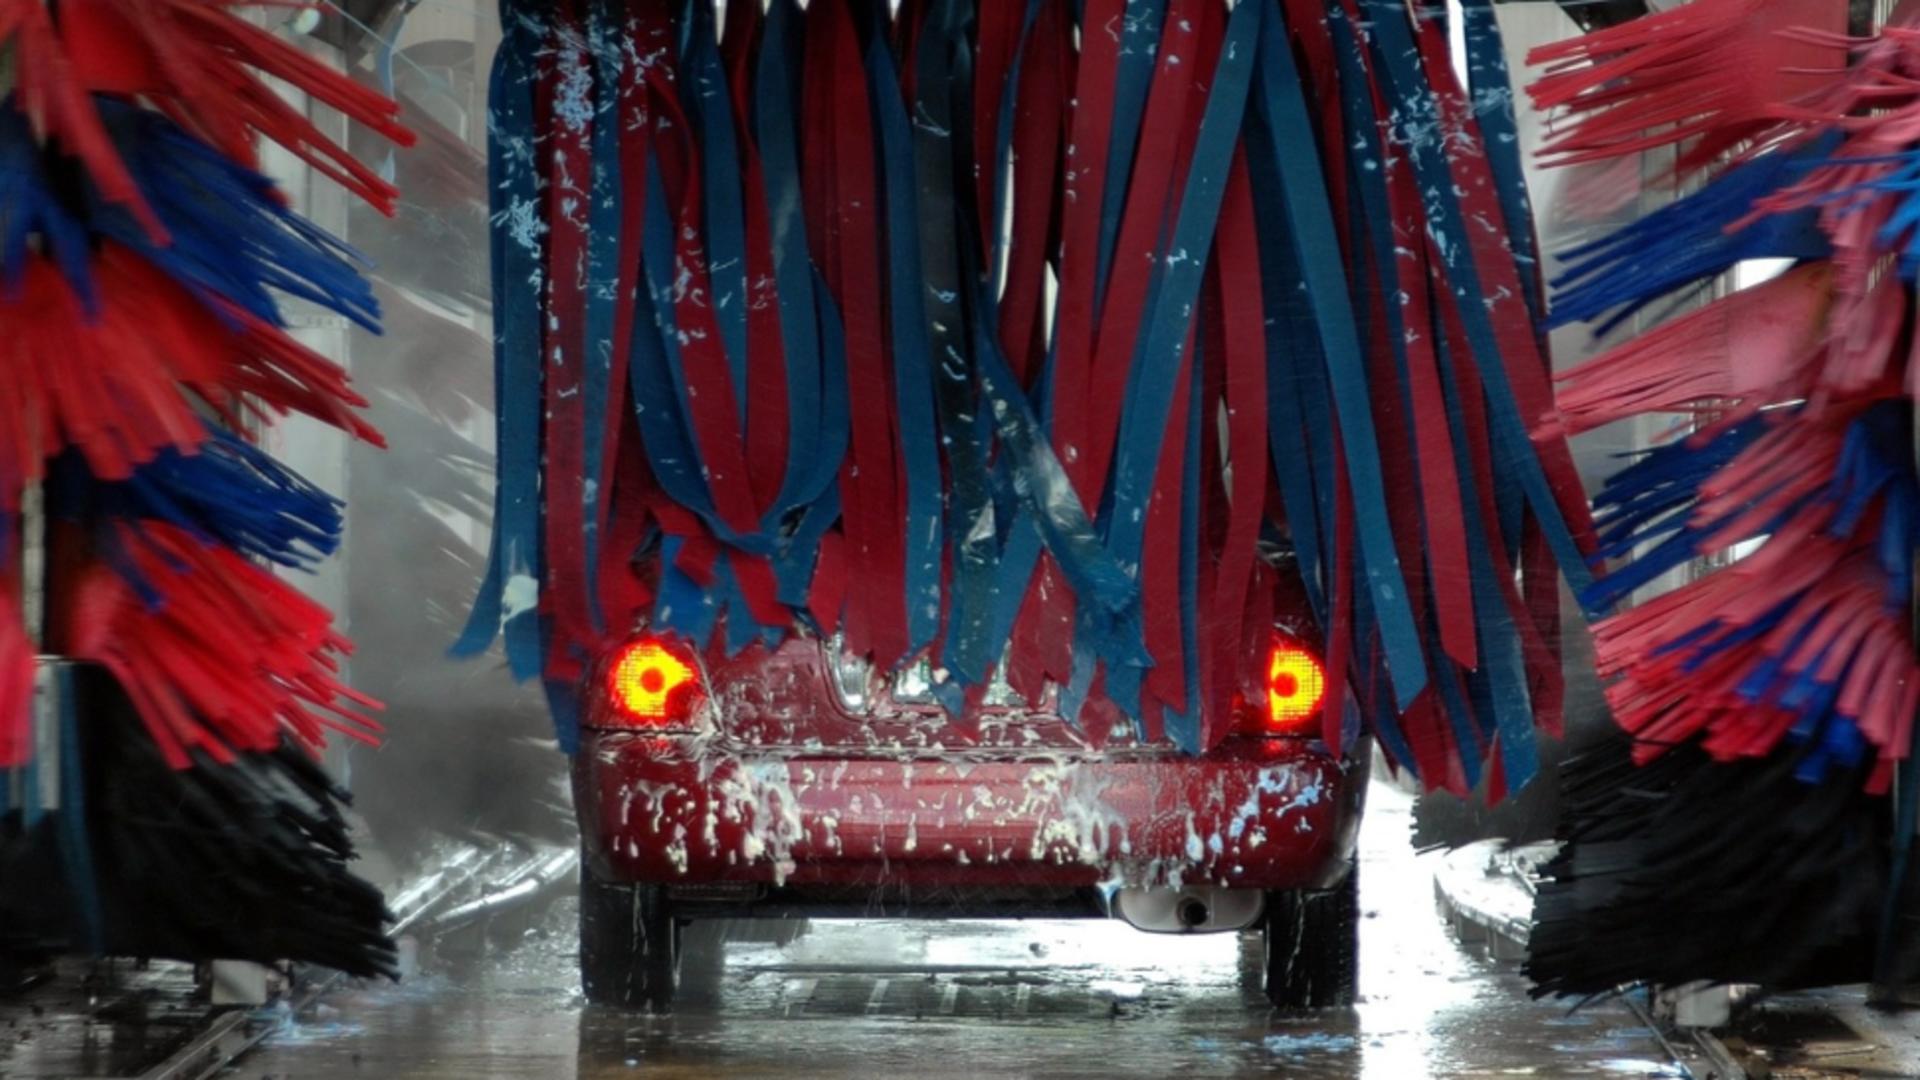 O nouă metodă de tâlhărie face victime în România: femeie jefuită în timp ce-și spăla mașina